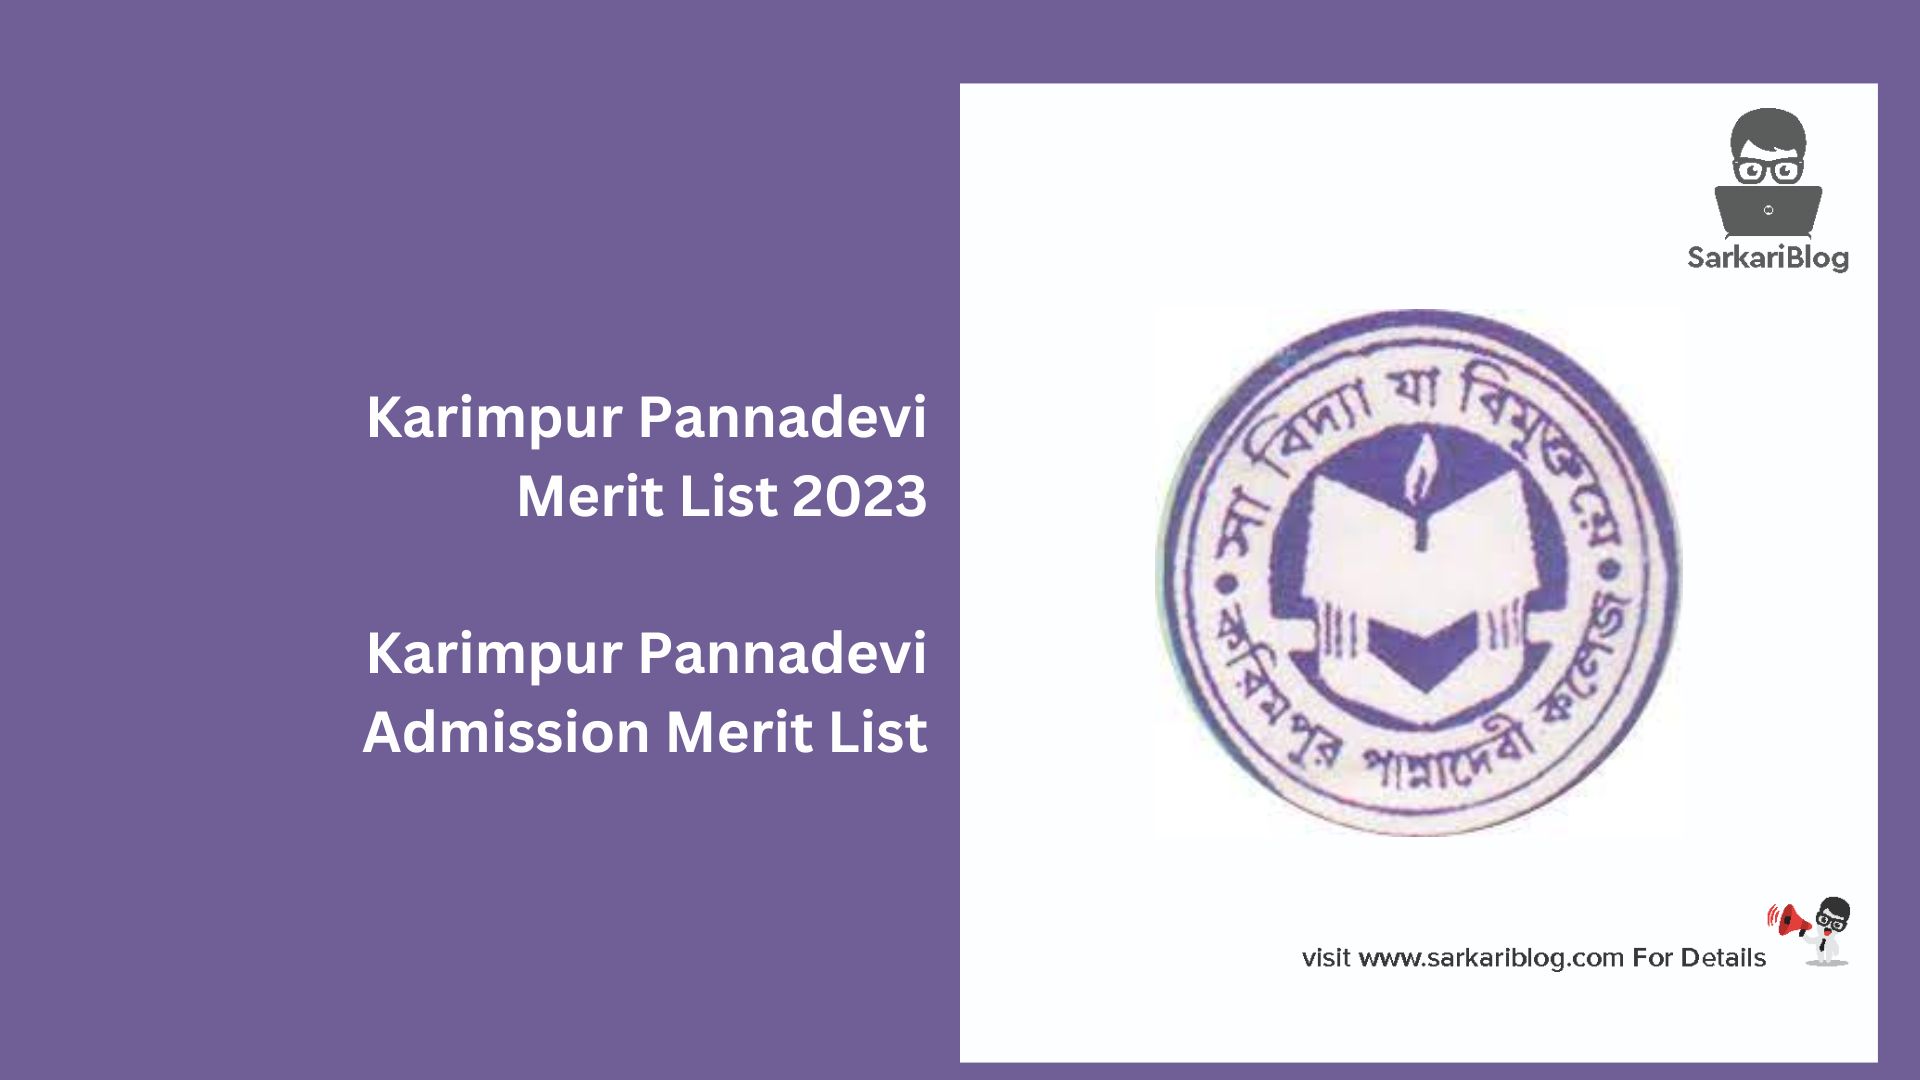 Karimpur Pannadevi Merit List 2023